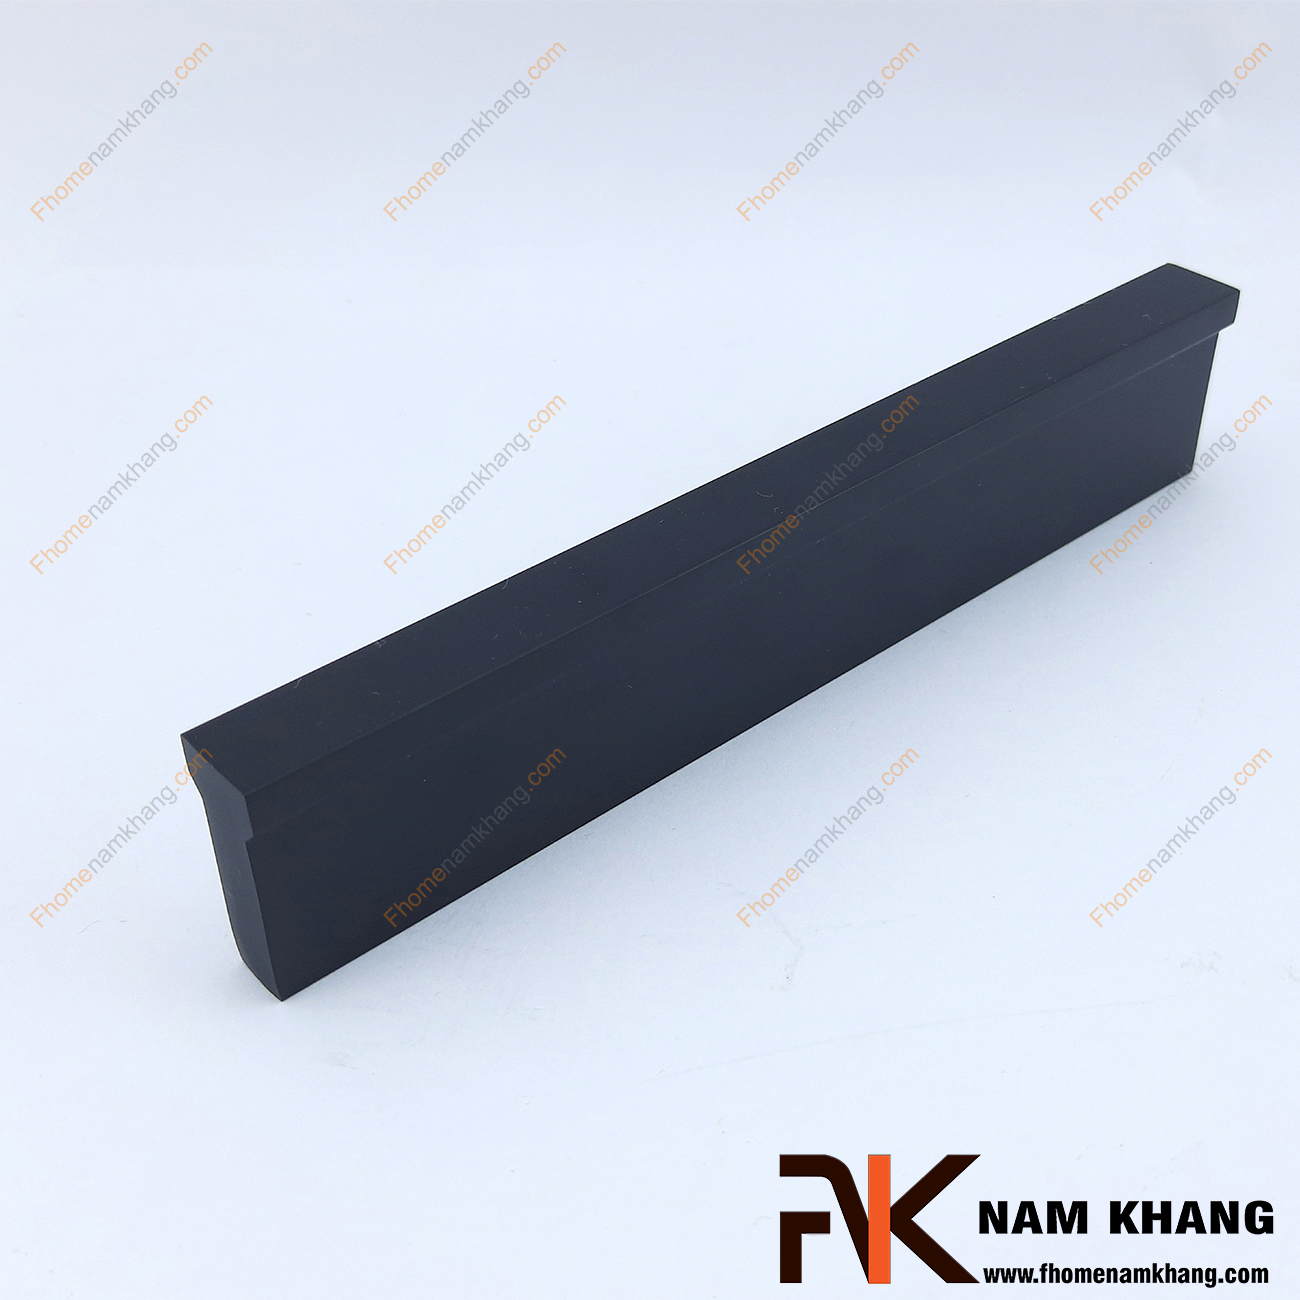 Tay nắm tủ dạng thanh màu đen NK406-D có dạng thanh chữ T với góc cạnh vuông được xử lý gọn gàng. Sỡ hữu công nghệ anode nhôm tạo màu cực đẹp, NK406 mang đến sự thanh lịch và đẳng cấp cho một sản phẩm chất lượng.